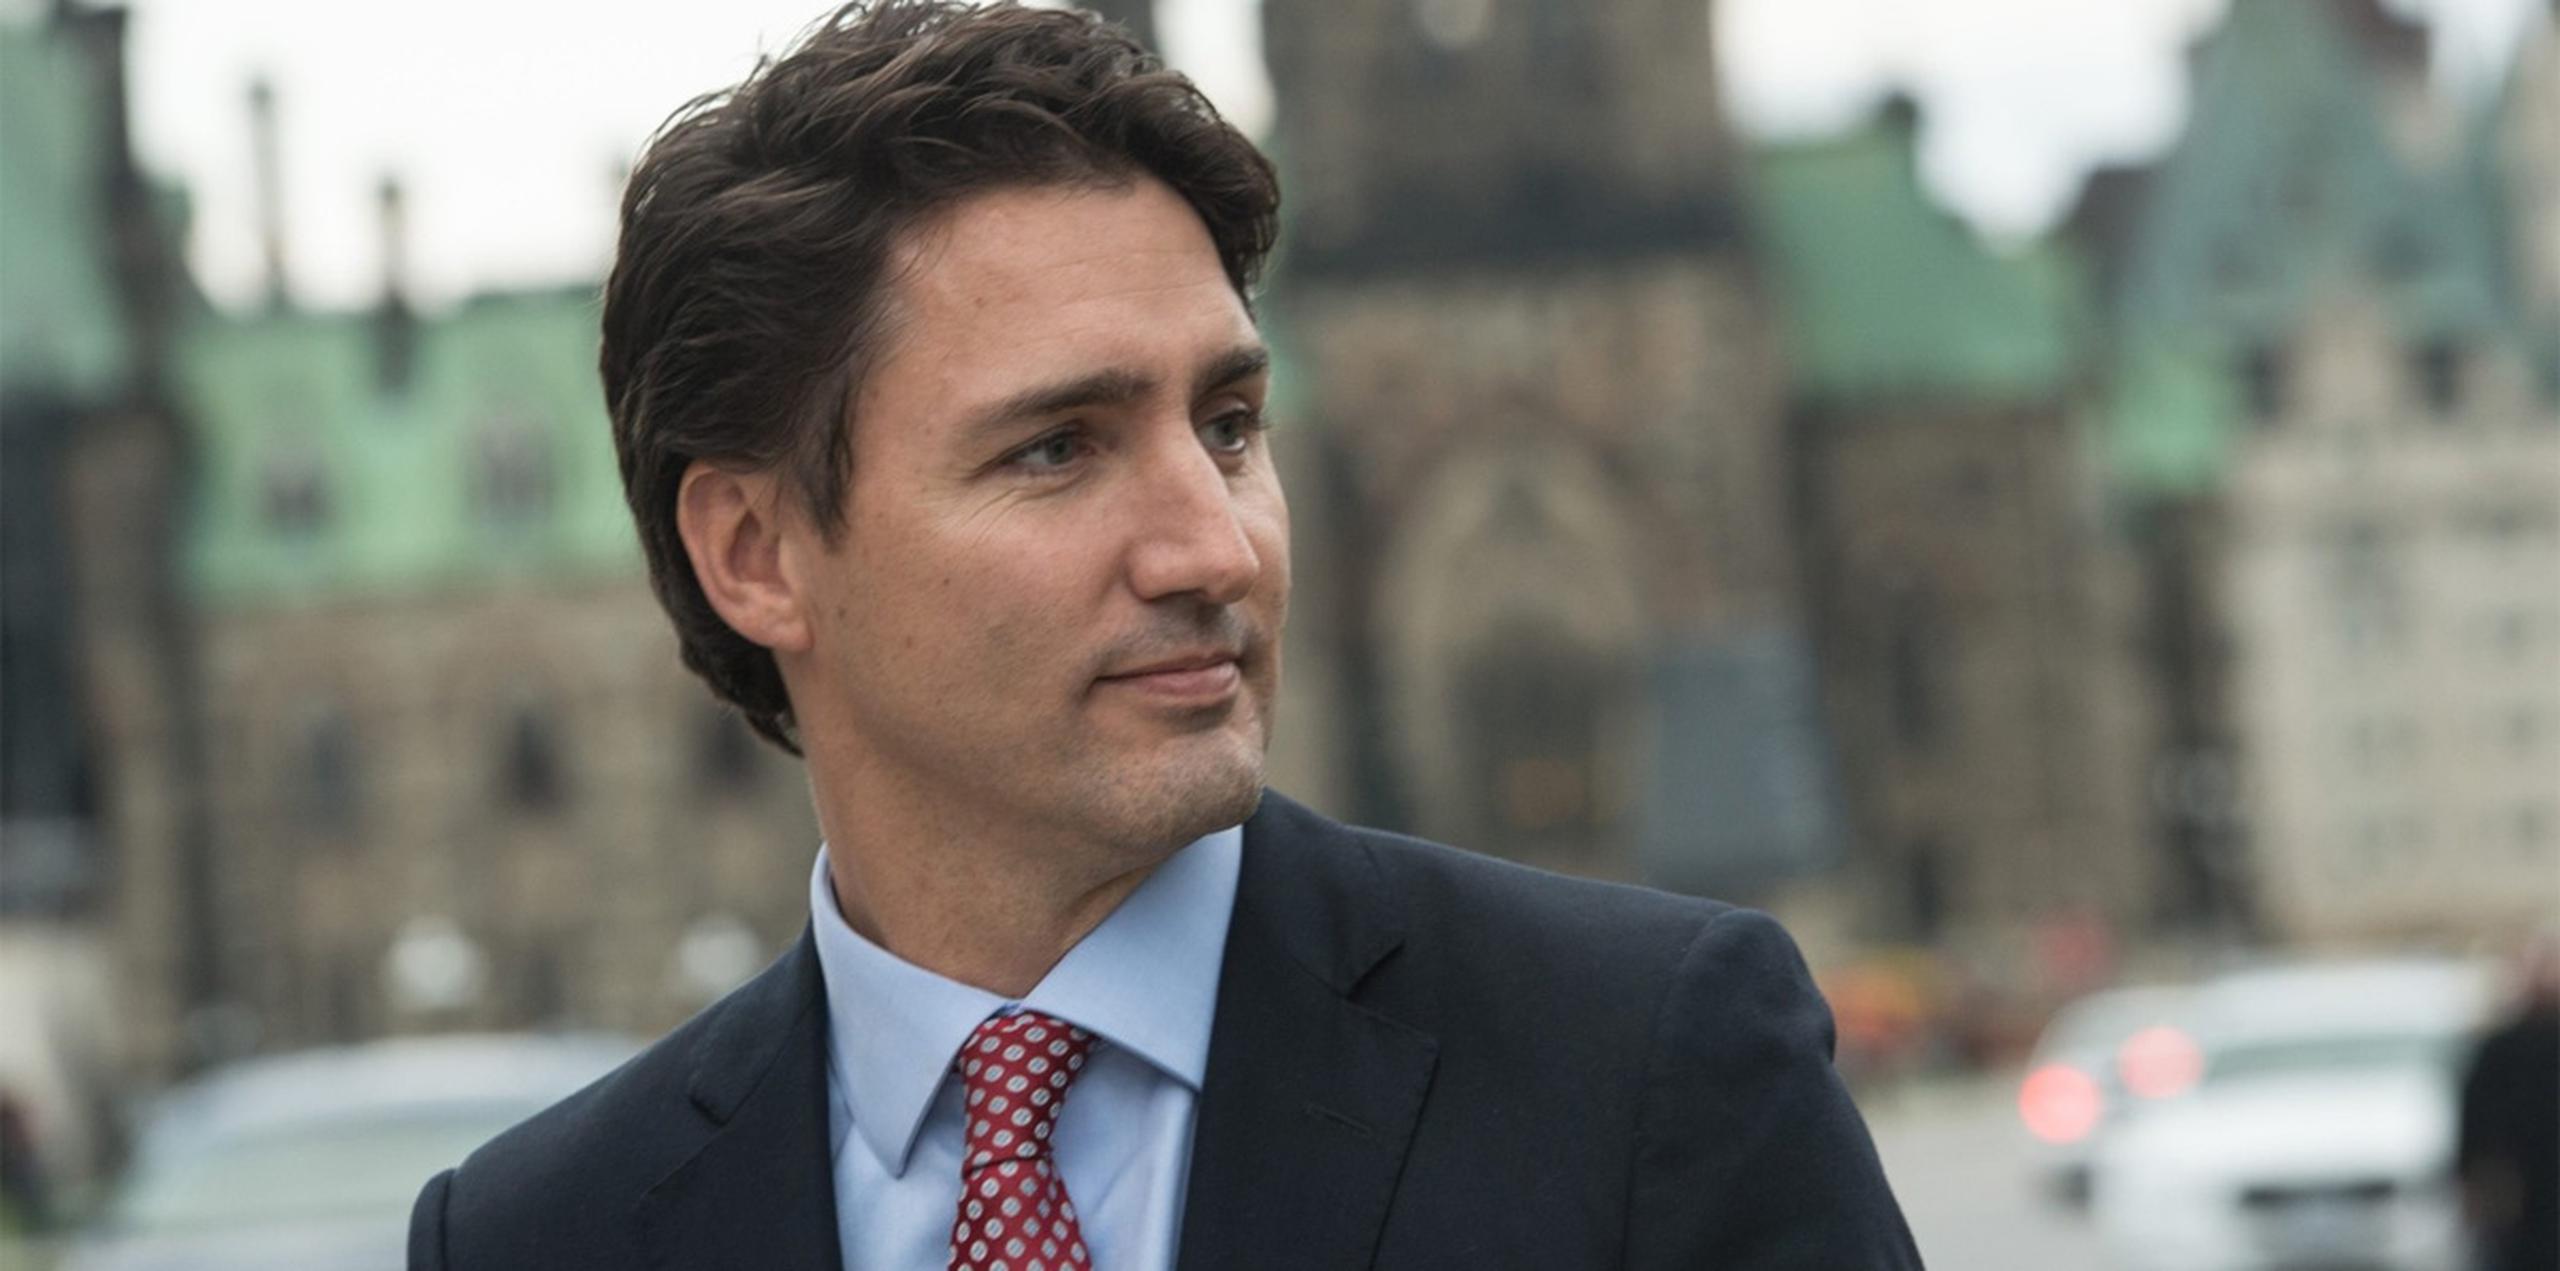 Justin Tredeau, primer ministro de Canadá, conquistador de corazones. (Archivo)